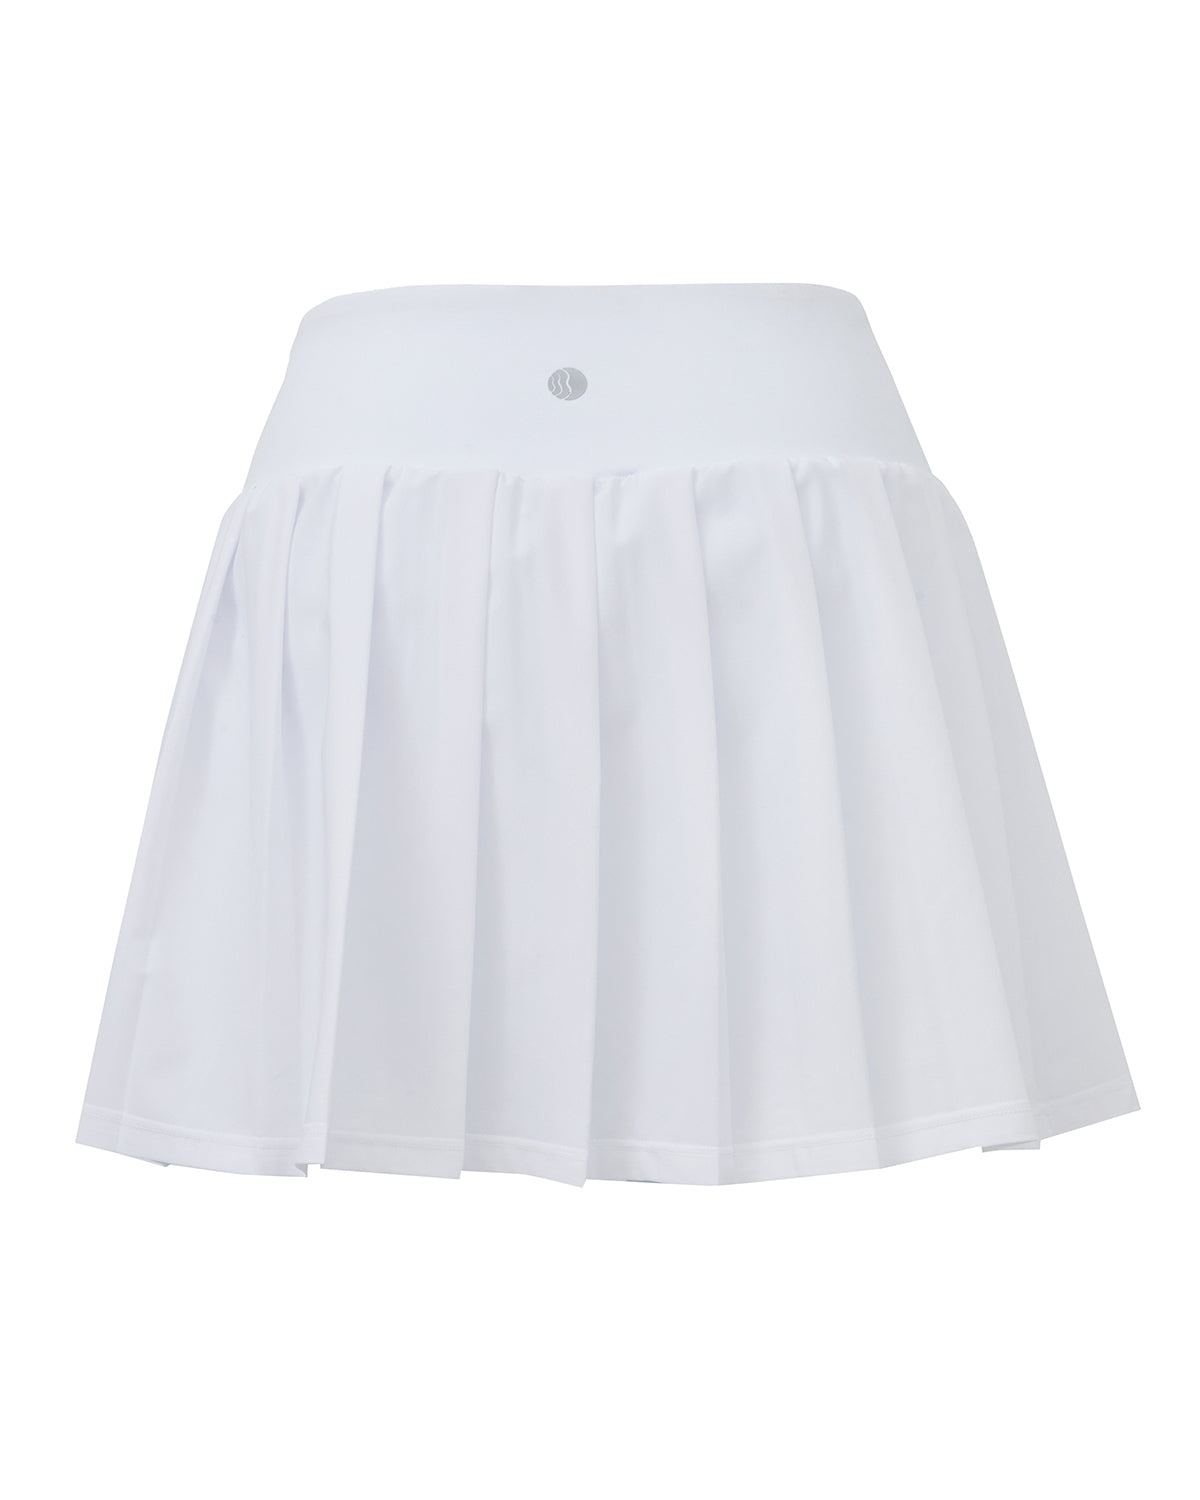 Ace Tennis Skirt In White